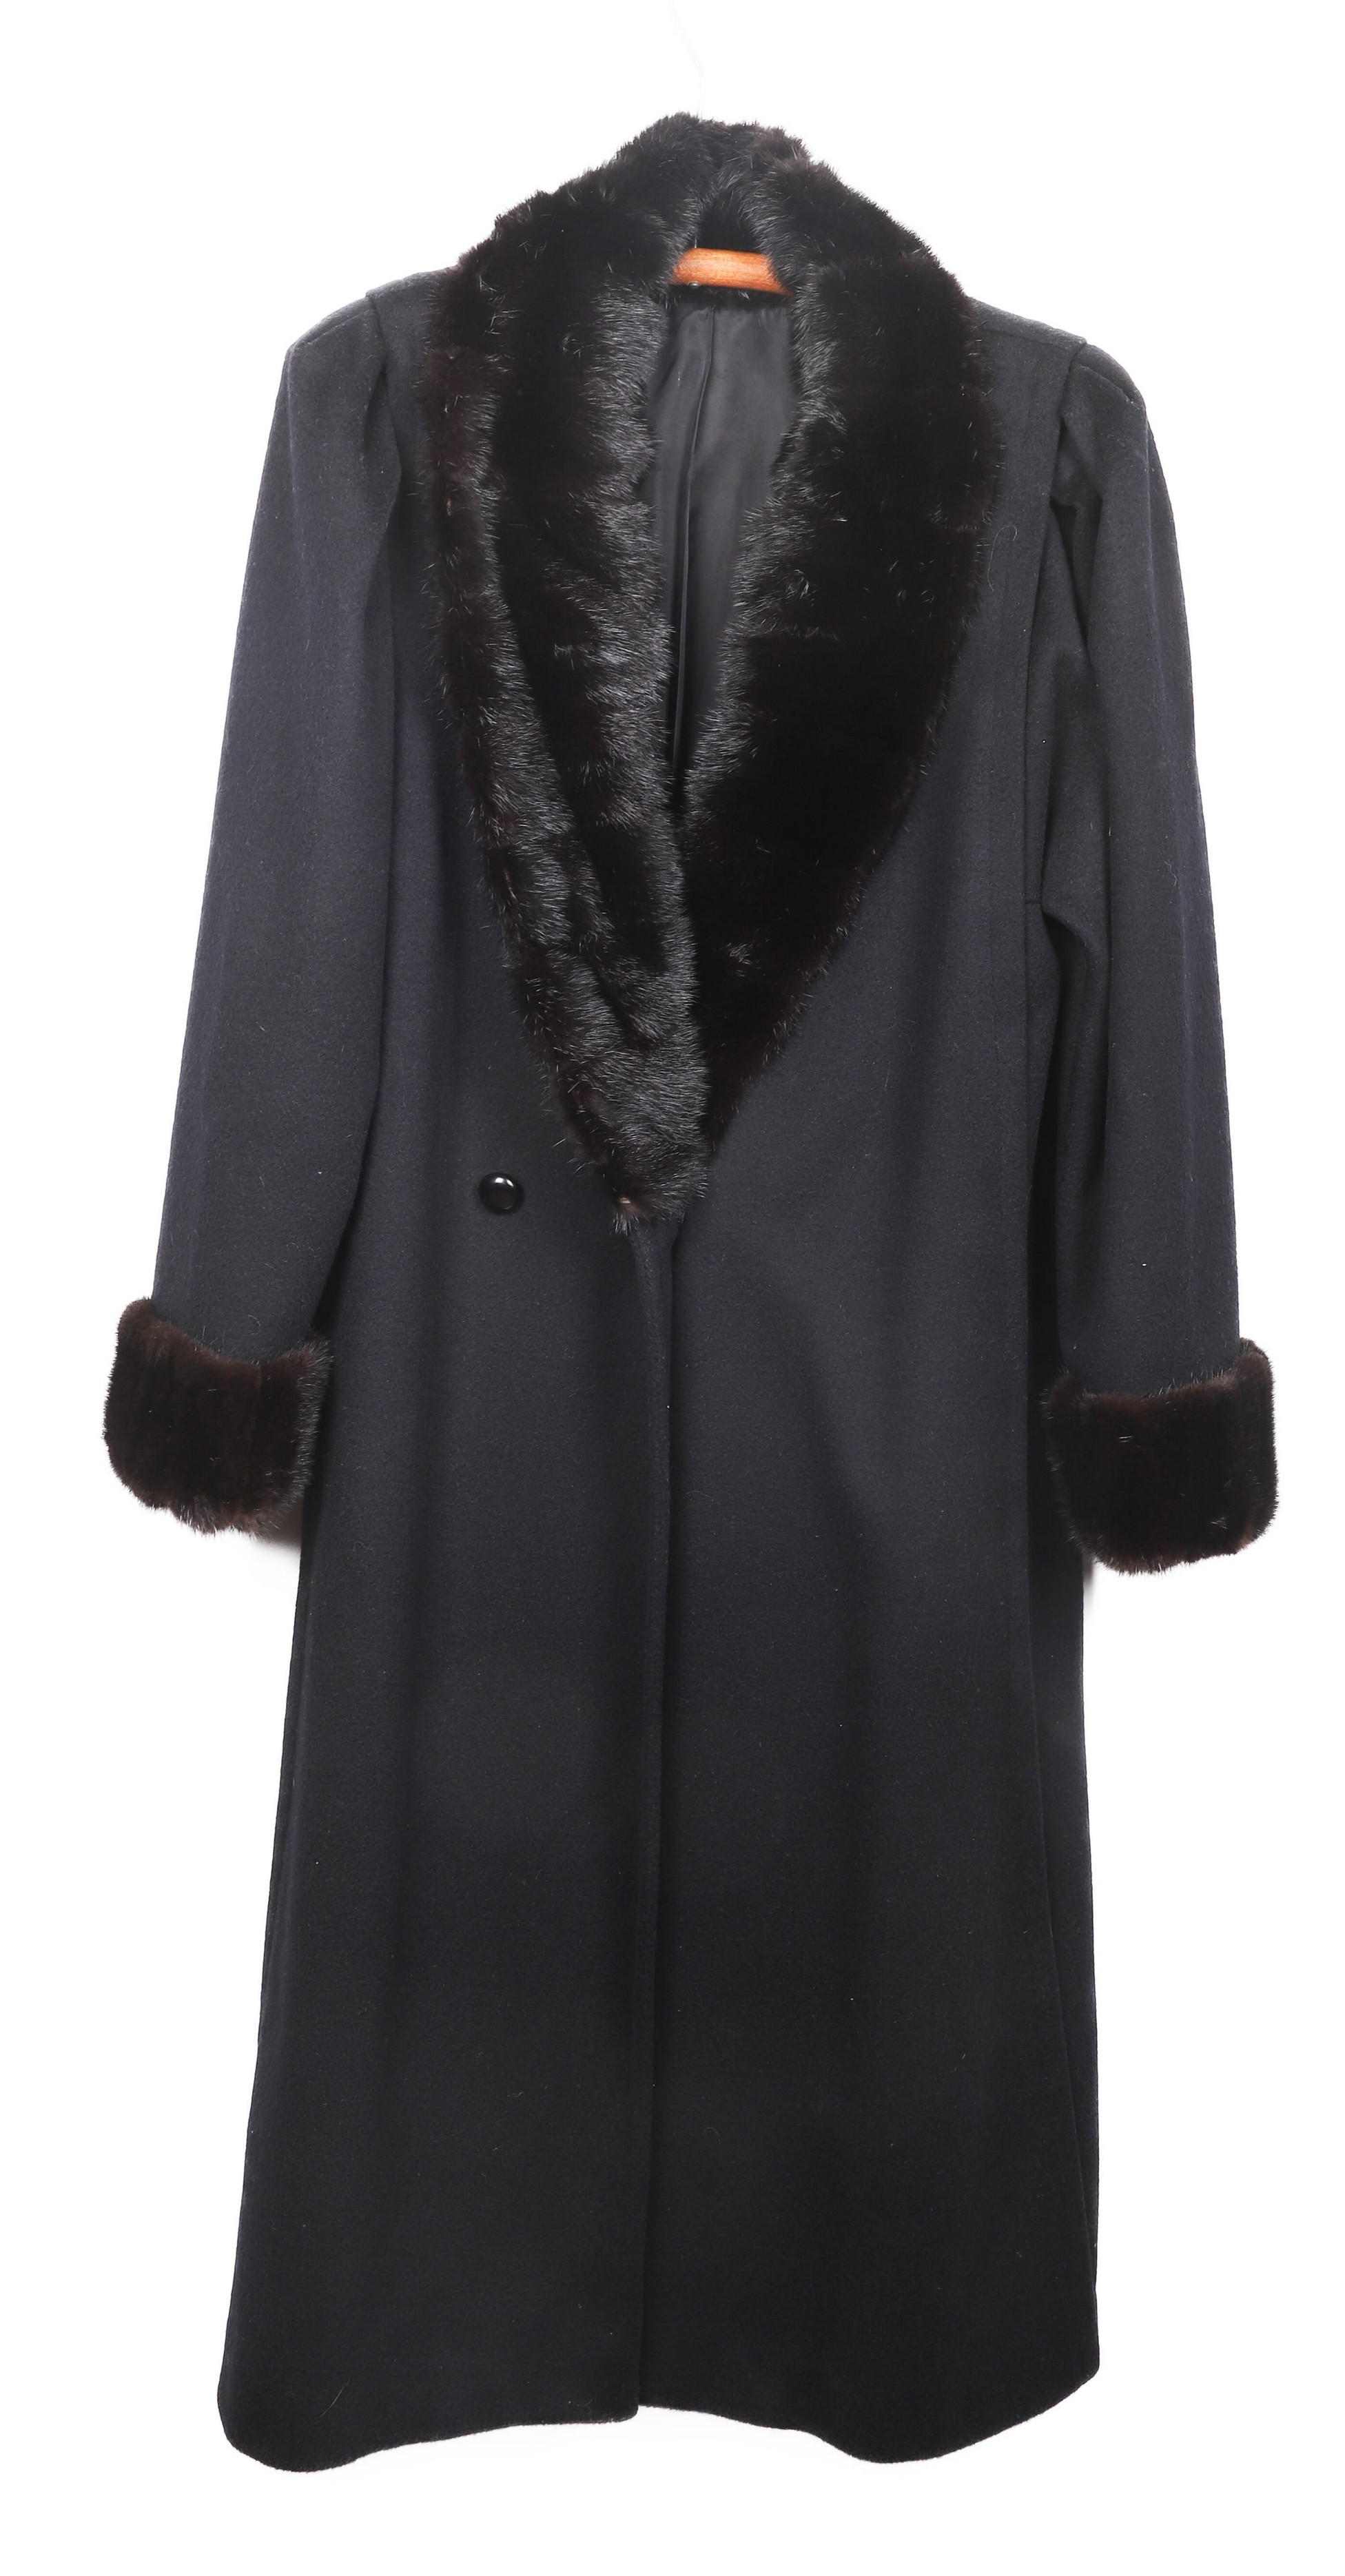 Vintage black ladies coat with mink